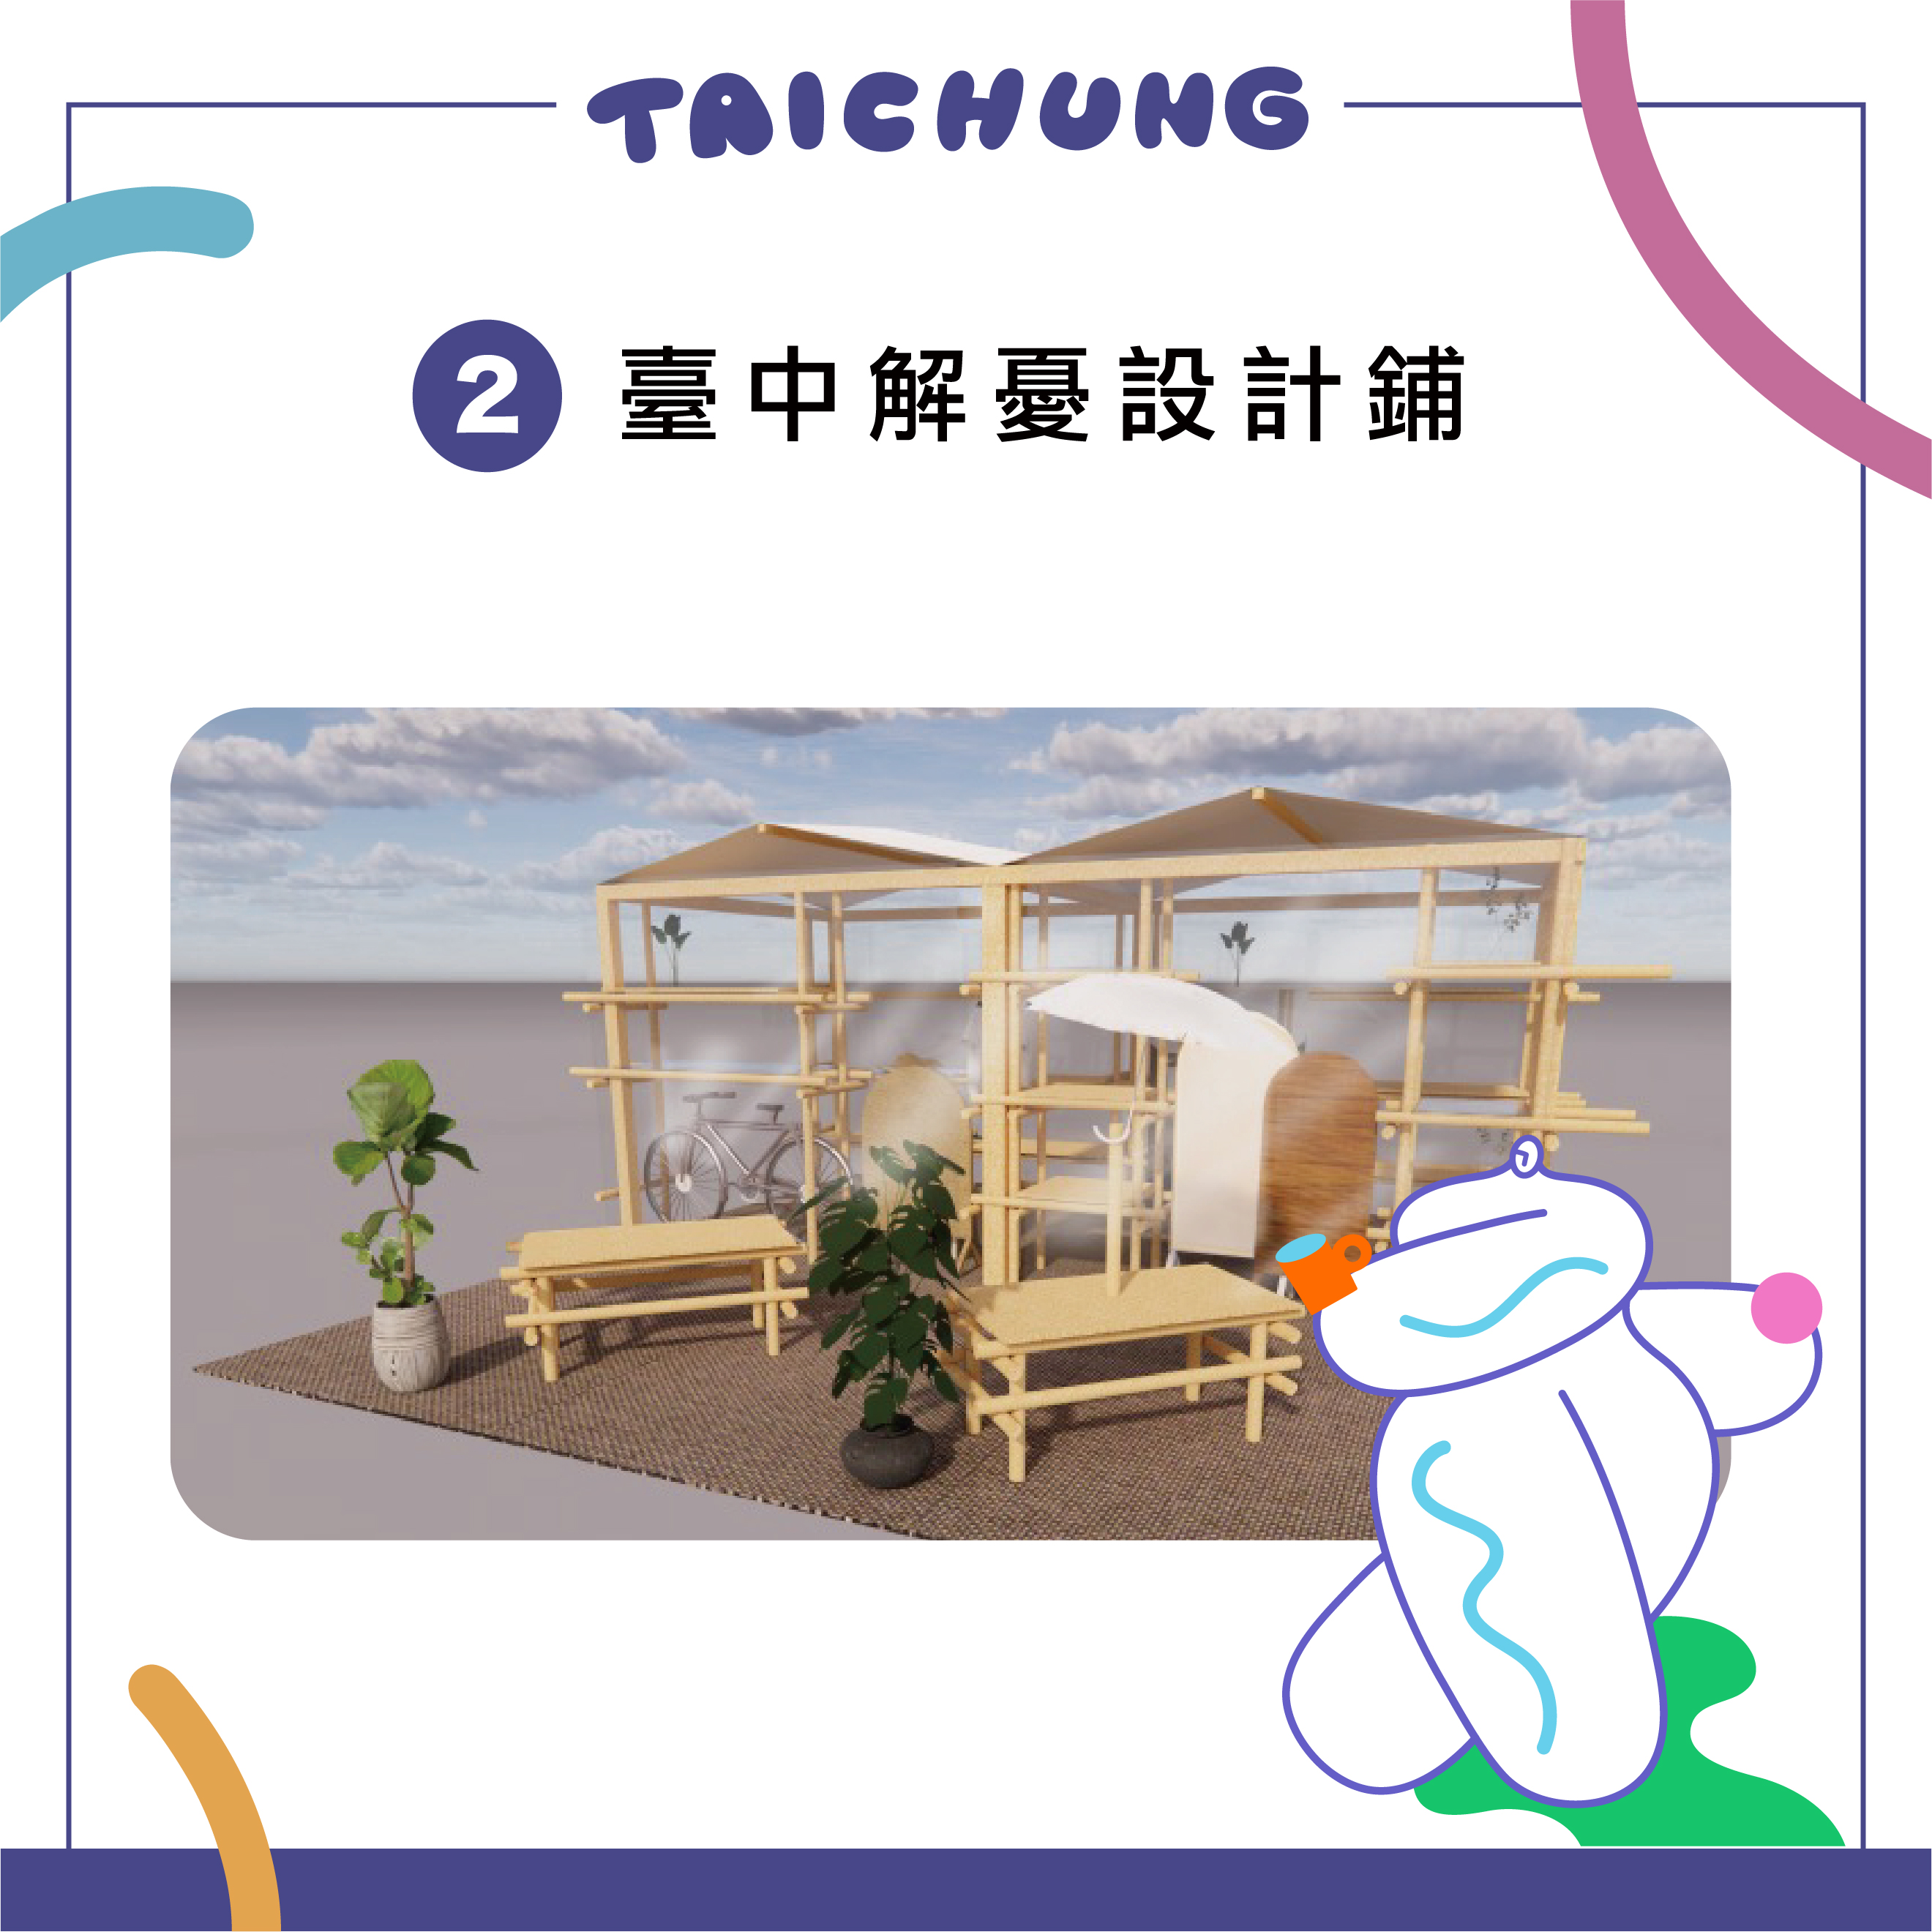 2. 臺中解憂設計鋪 Taichung’s Shop of Designs for Relaxing